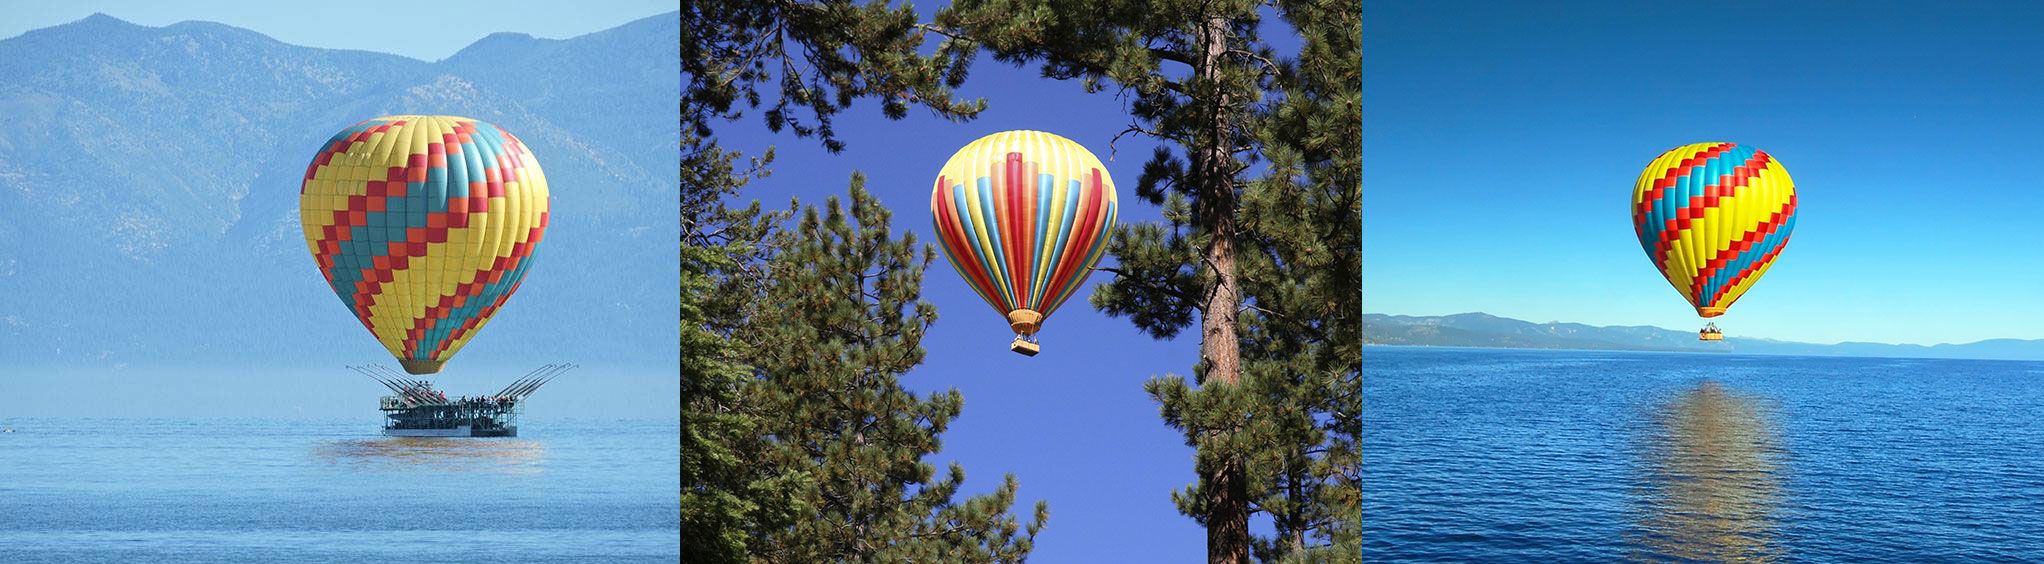 Lake Tahoe Balloons in Lake Tahoe, CA 